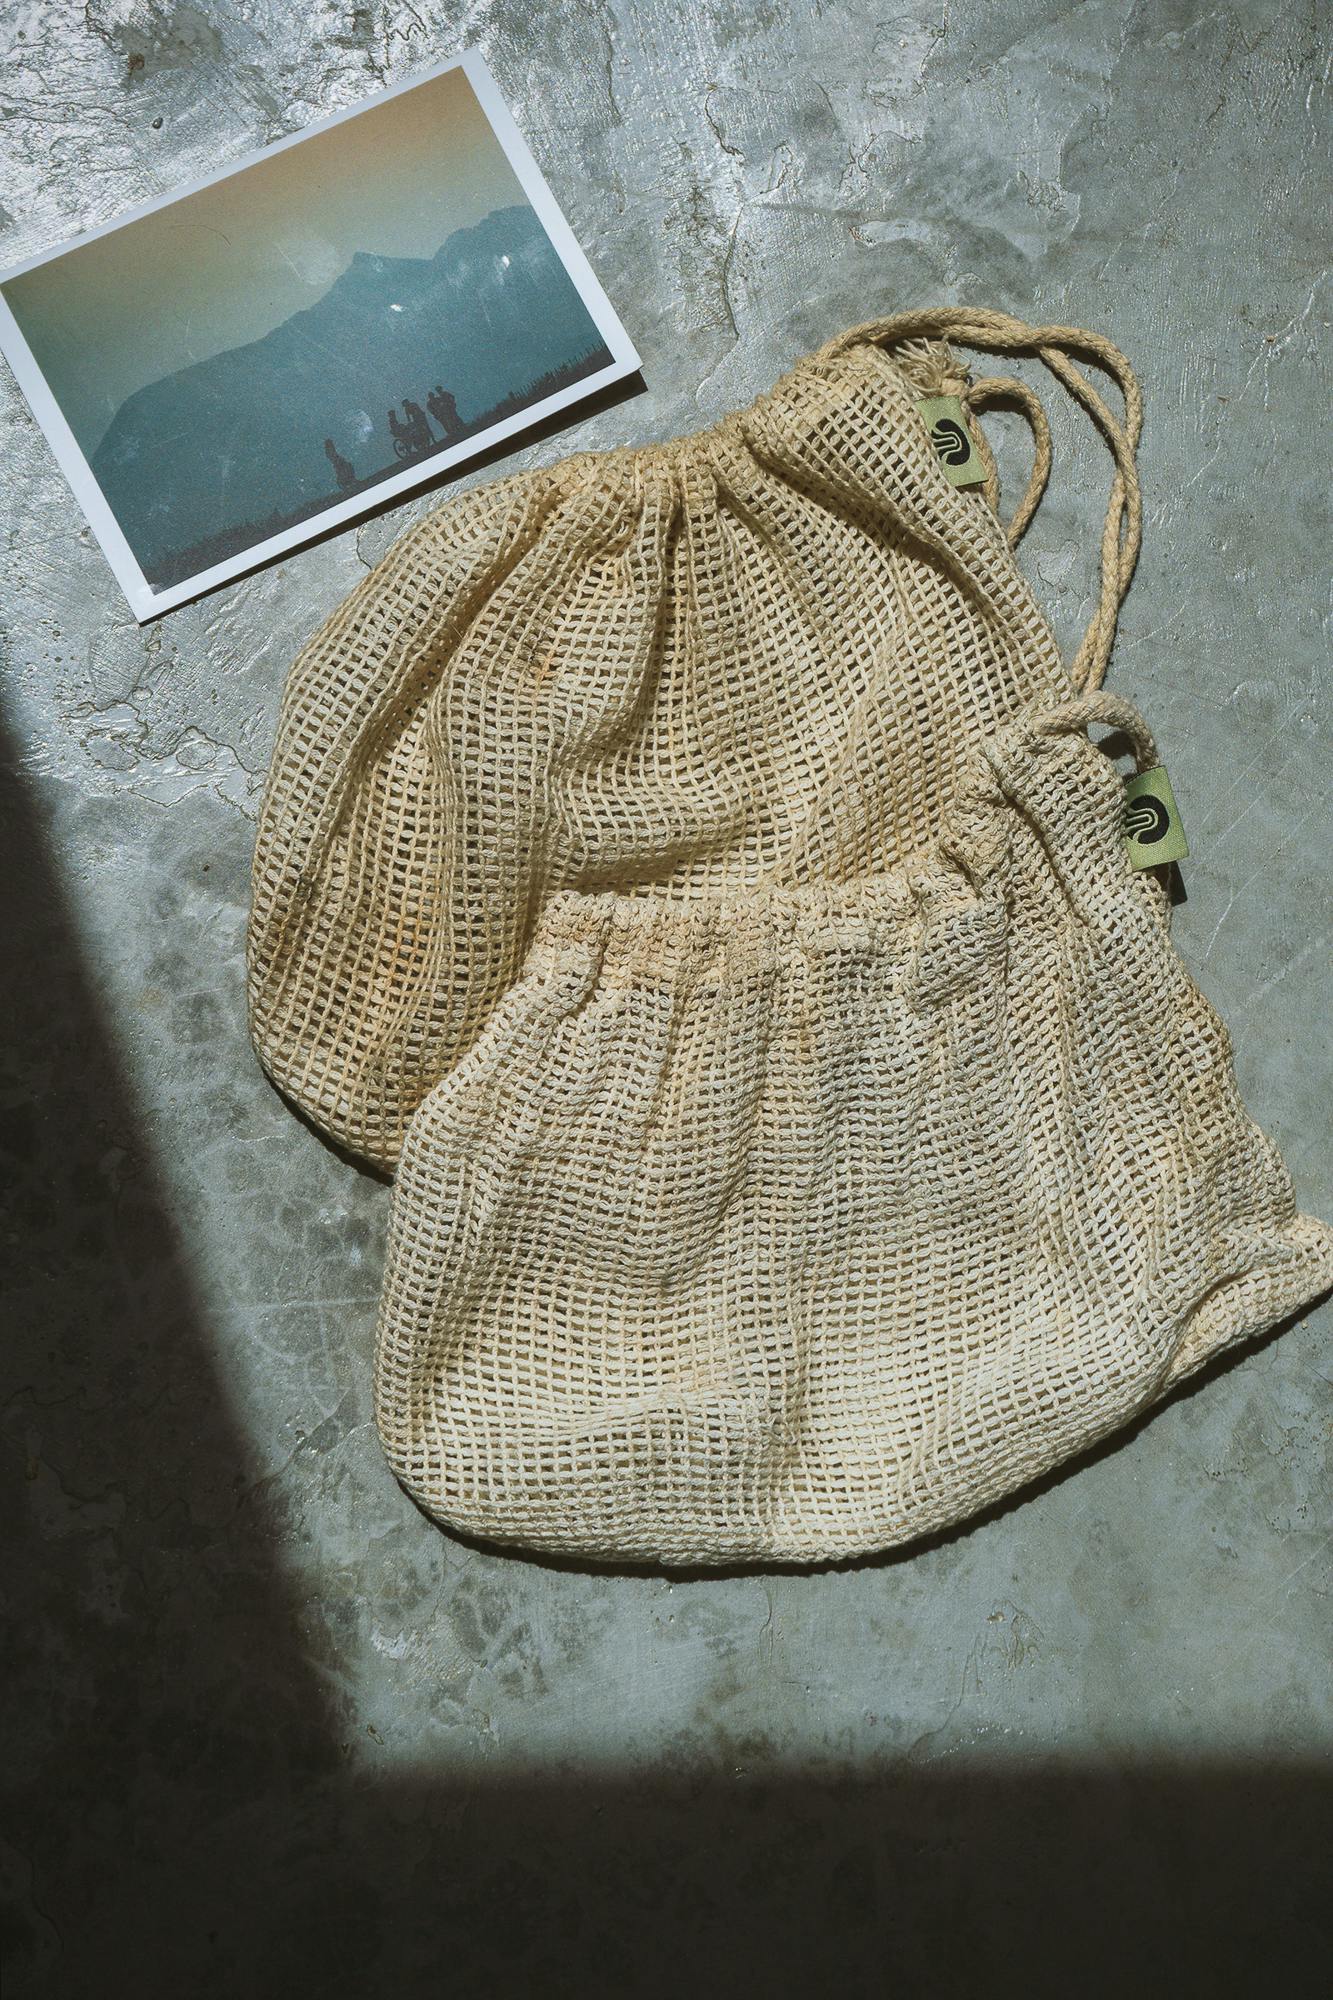 cotton bag